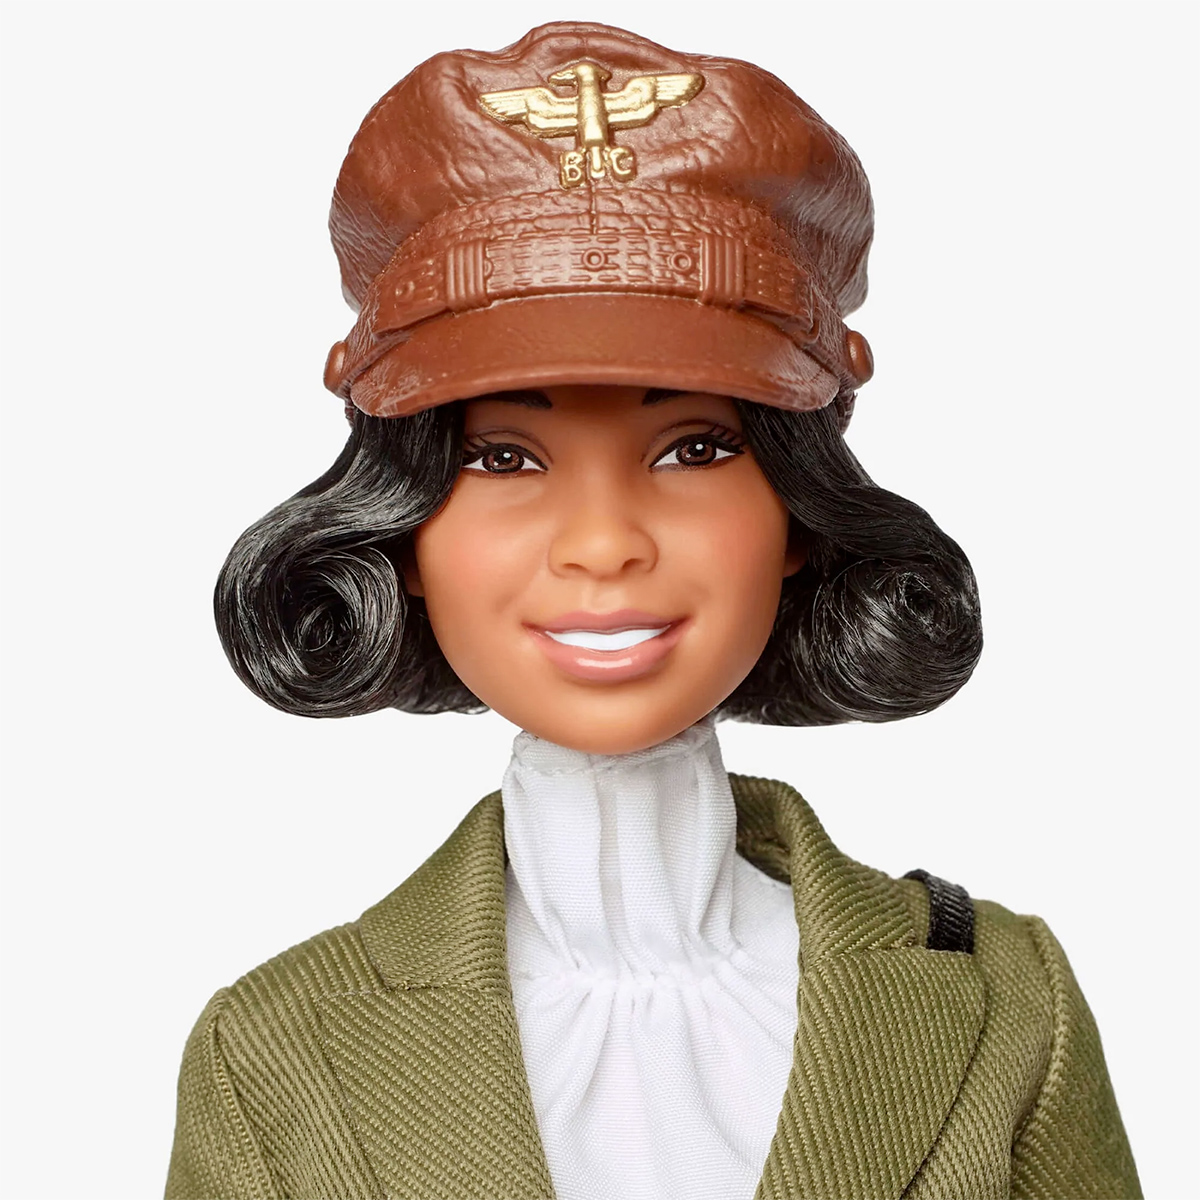 Barbie Inspiring Women: Bessie Coleman, a Primeira Aviadora Afroamericana